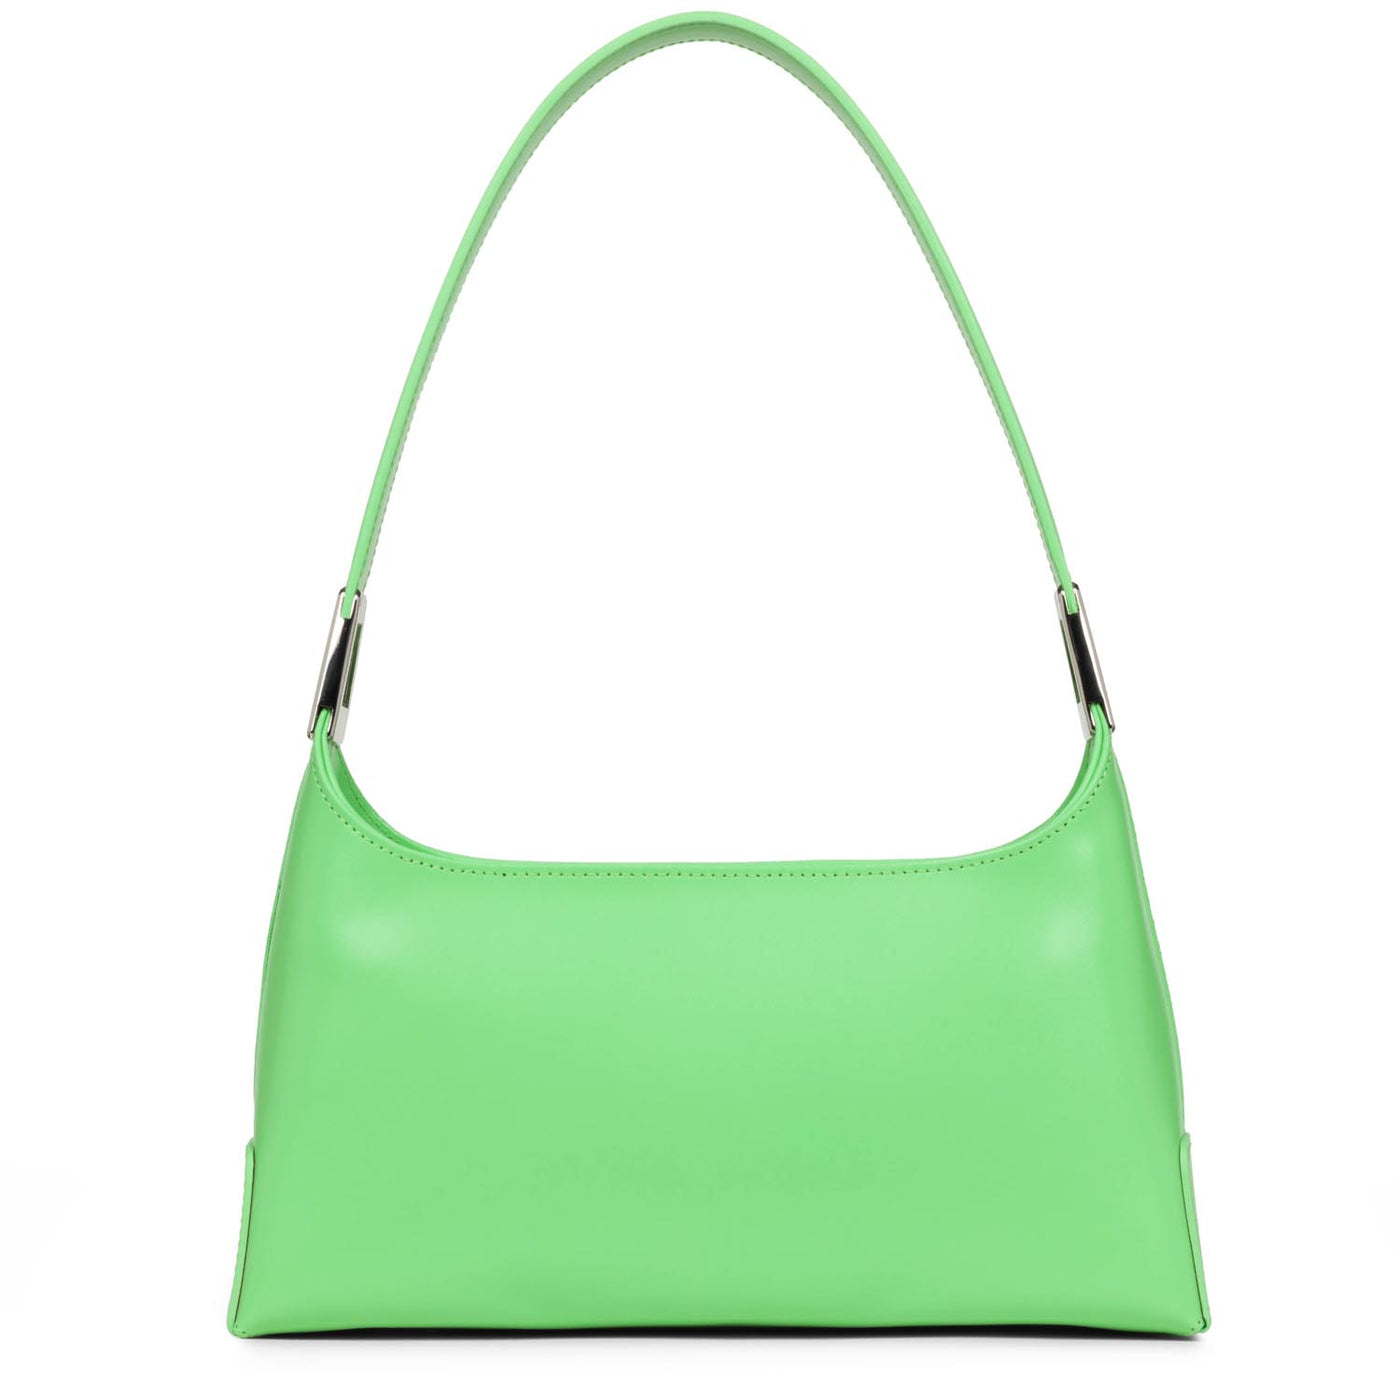 m baguette bag - suave ace #couleur_vert-colo